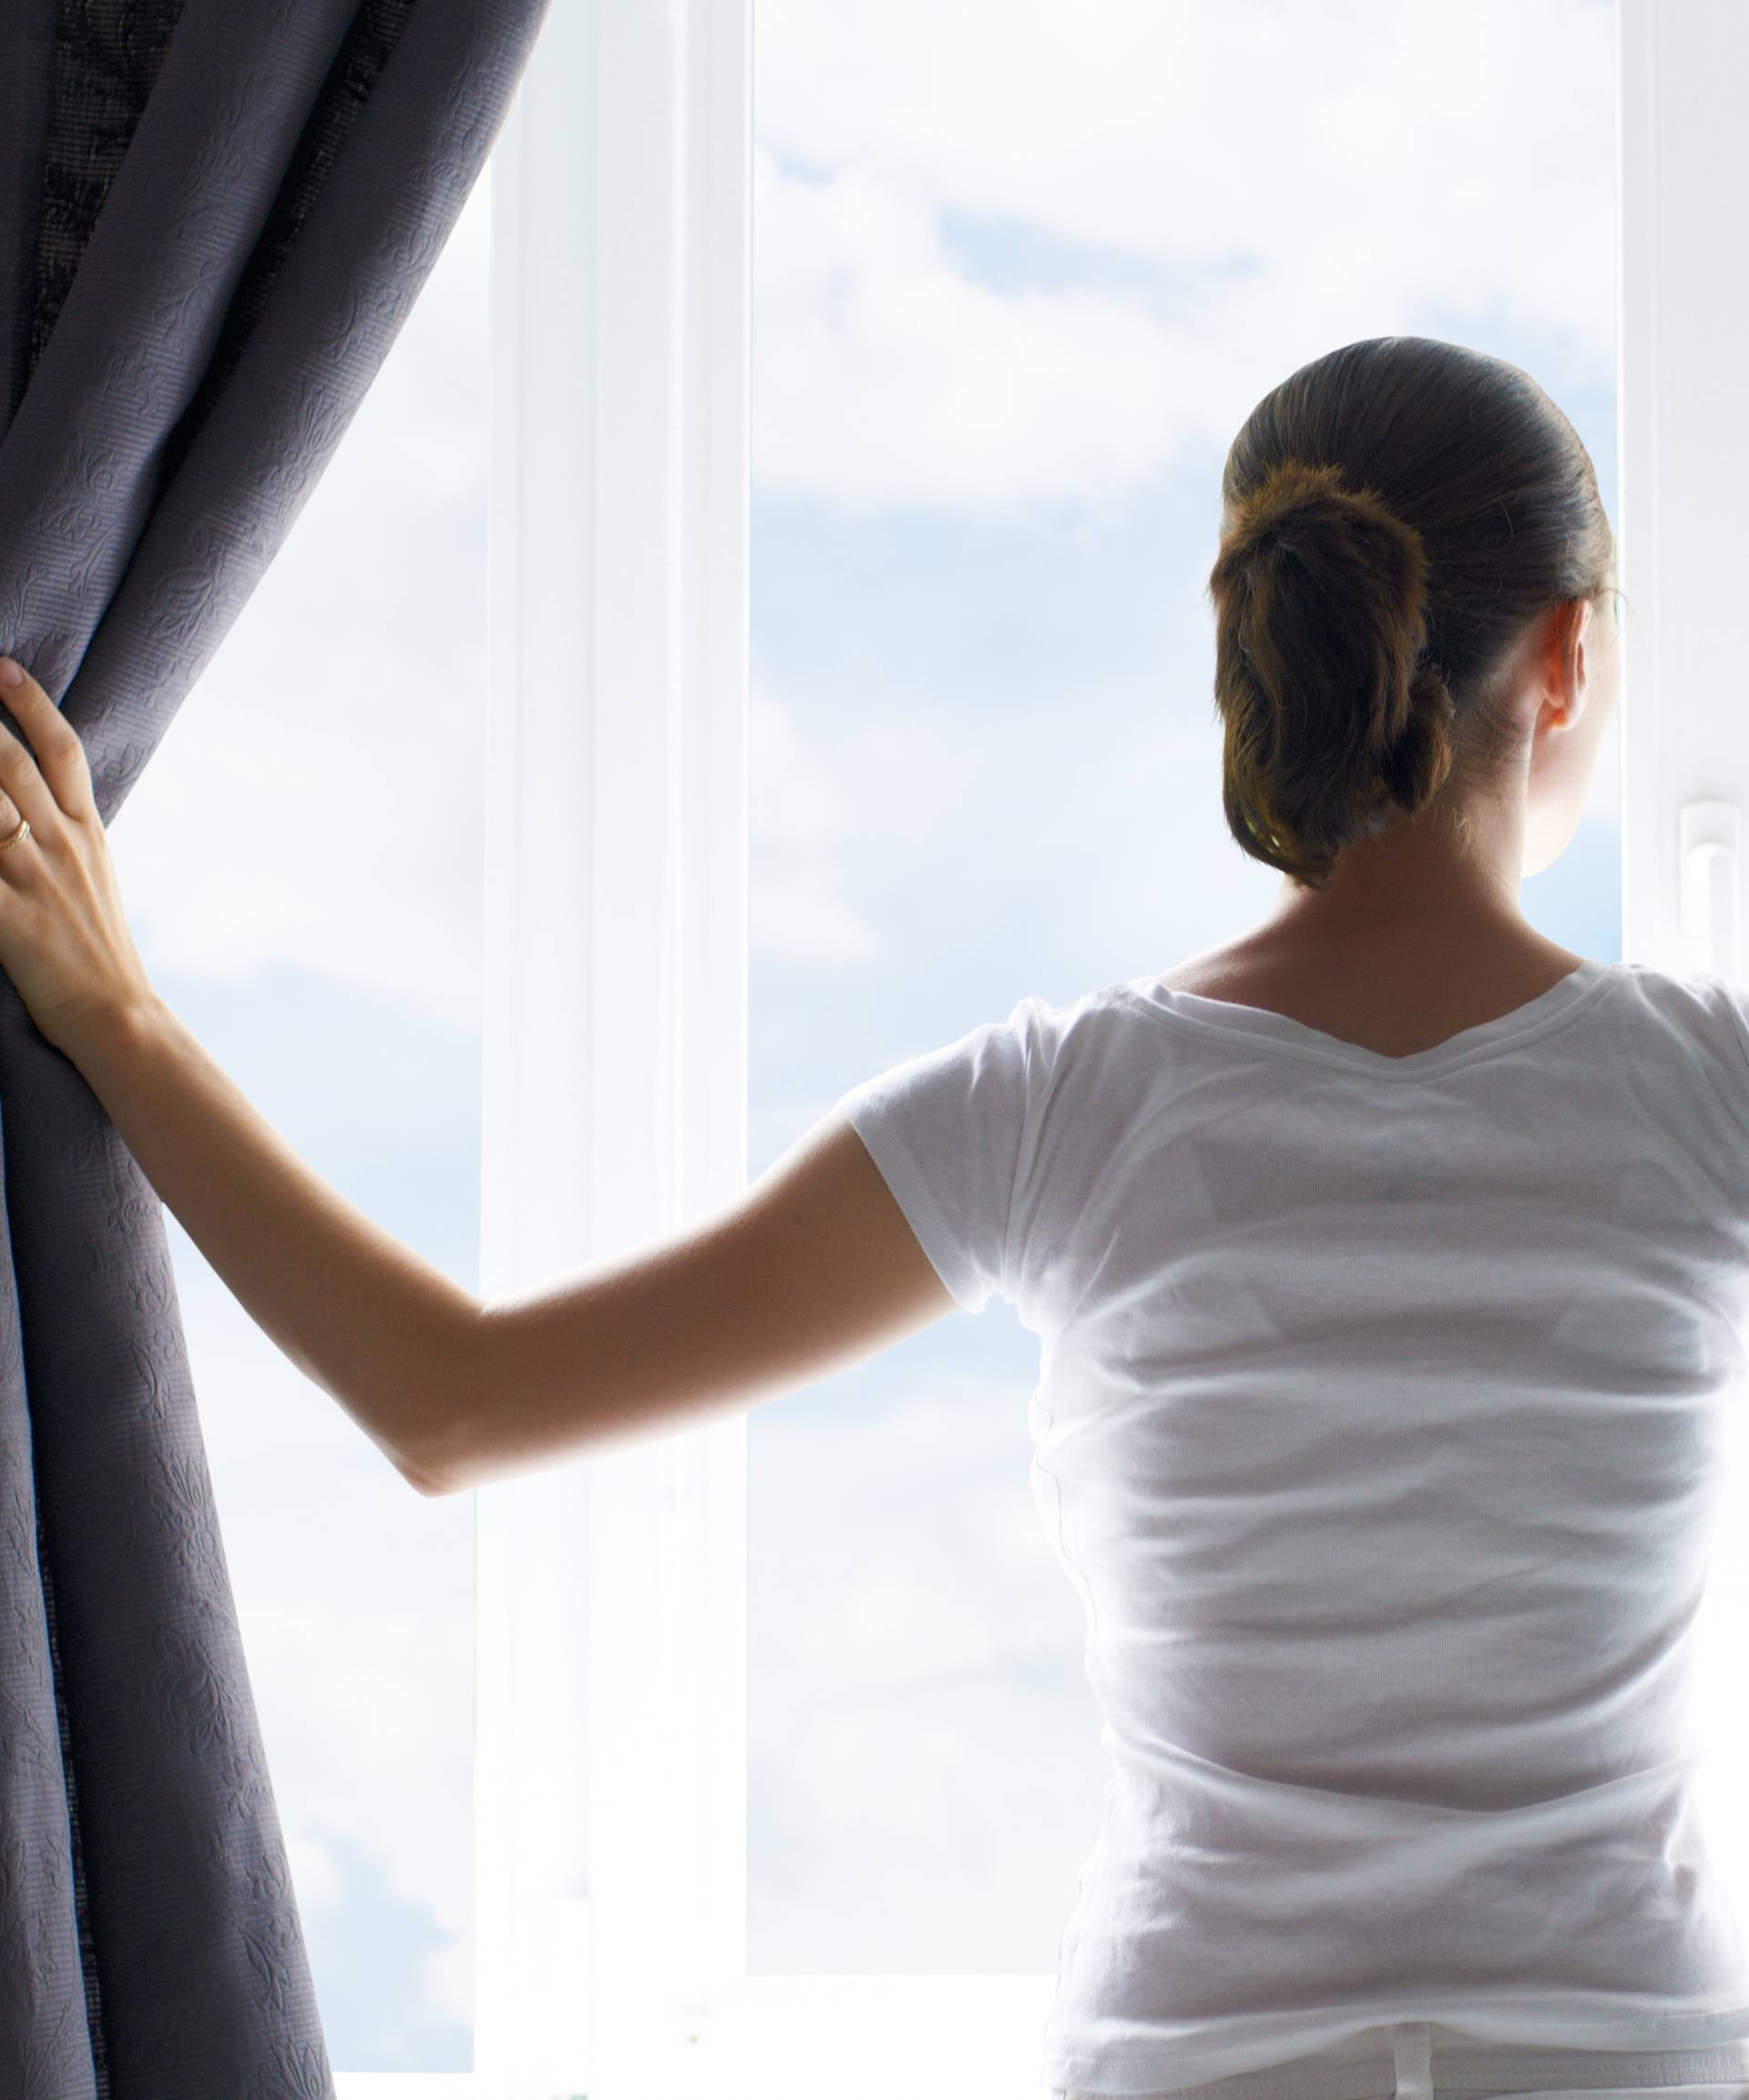 Izbaci bolest kroz prozor: Zimi treba zračiti stan barem 4 puta